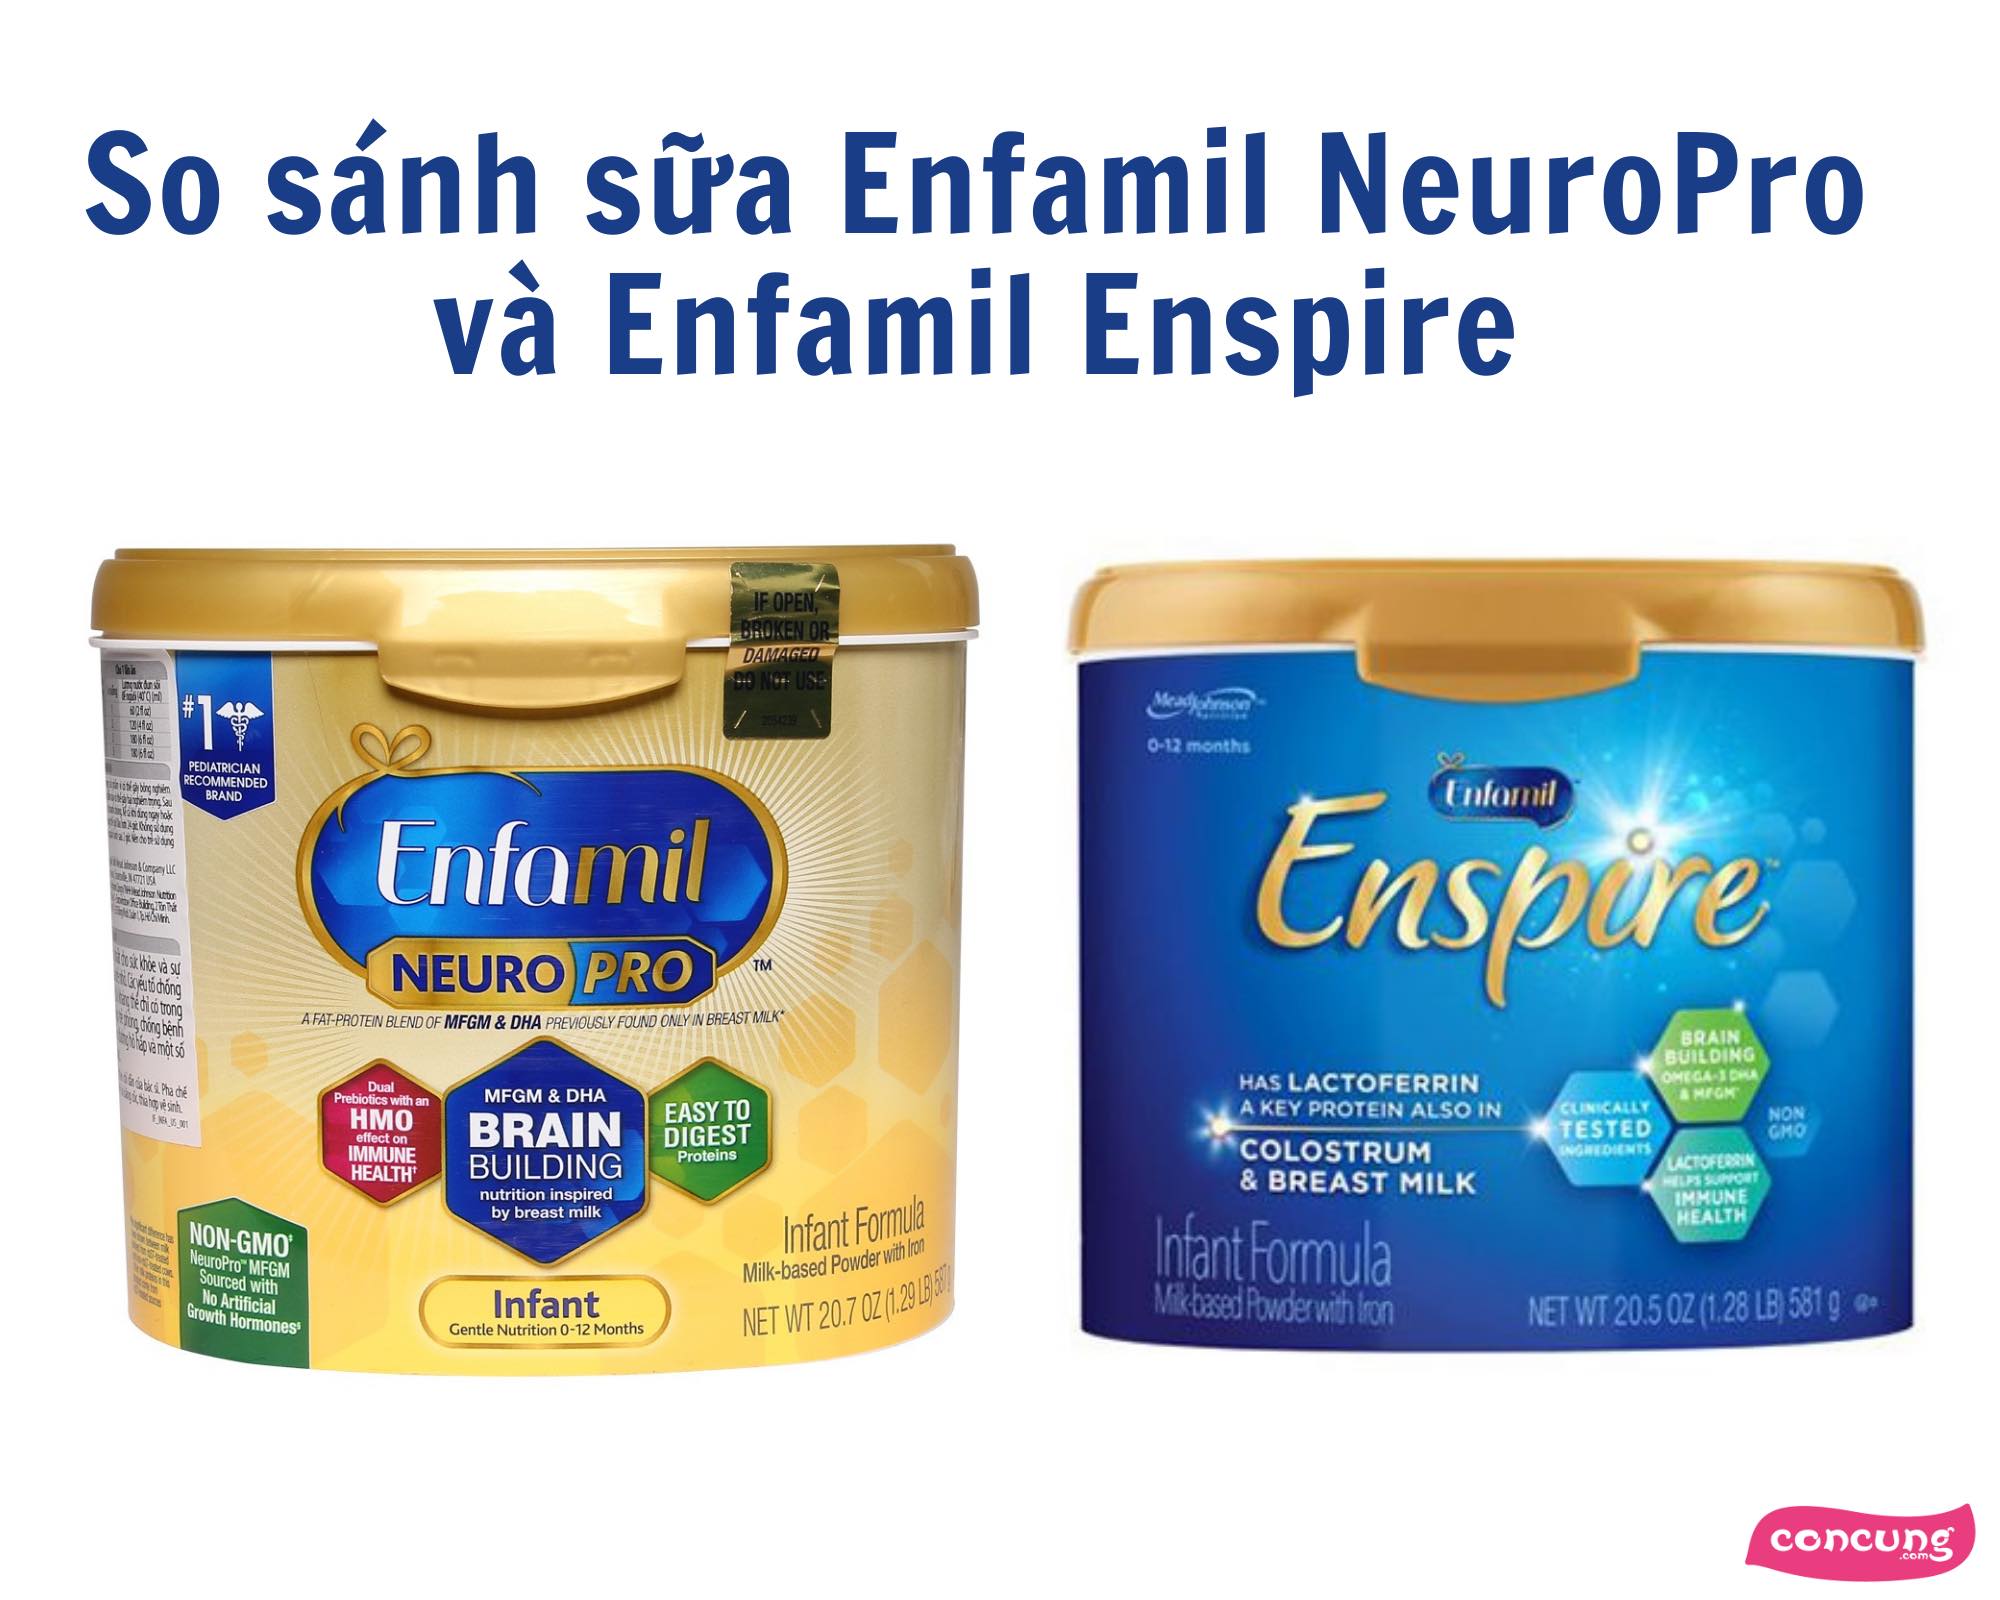 So sánh hai dòng sữa nhập Mỹ - Enfamil NeuroPro và Enfamil Enspire